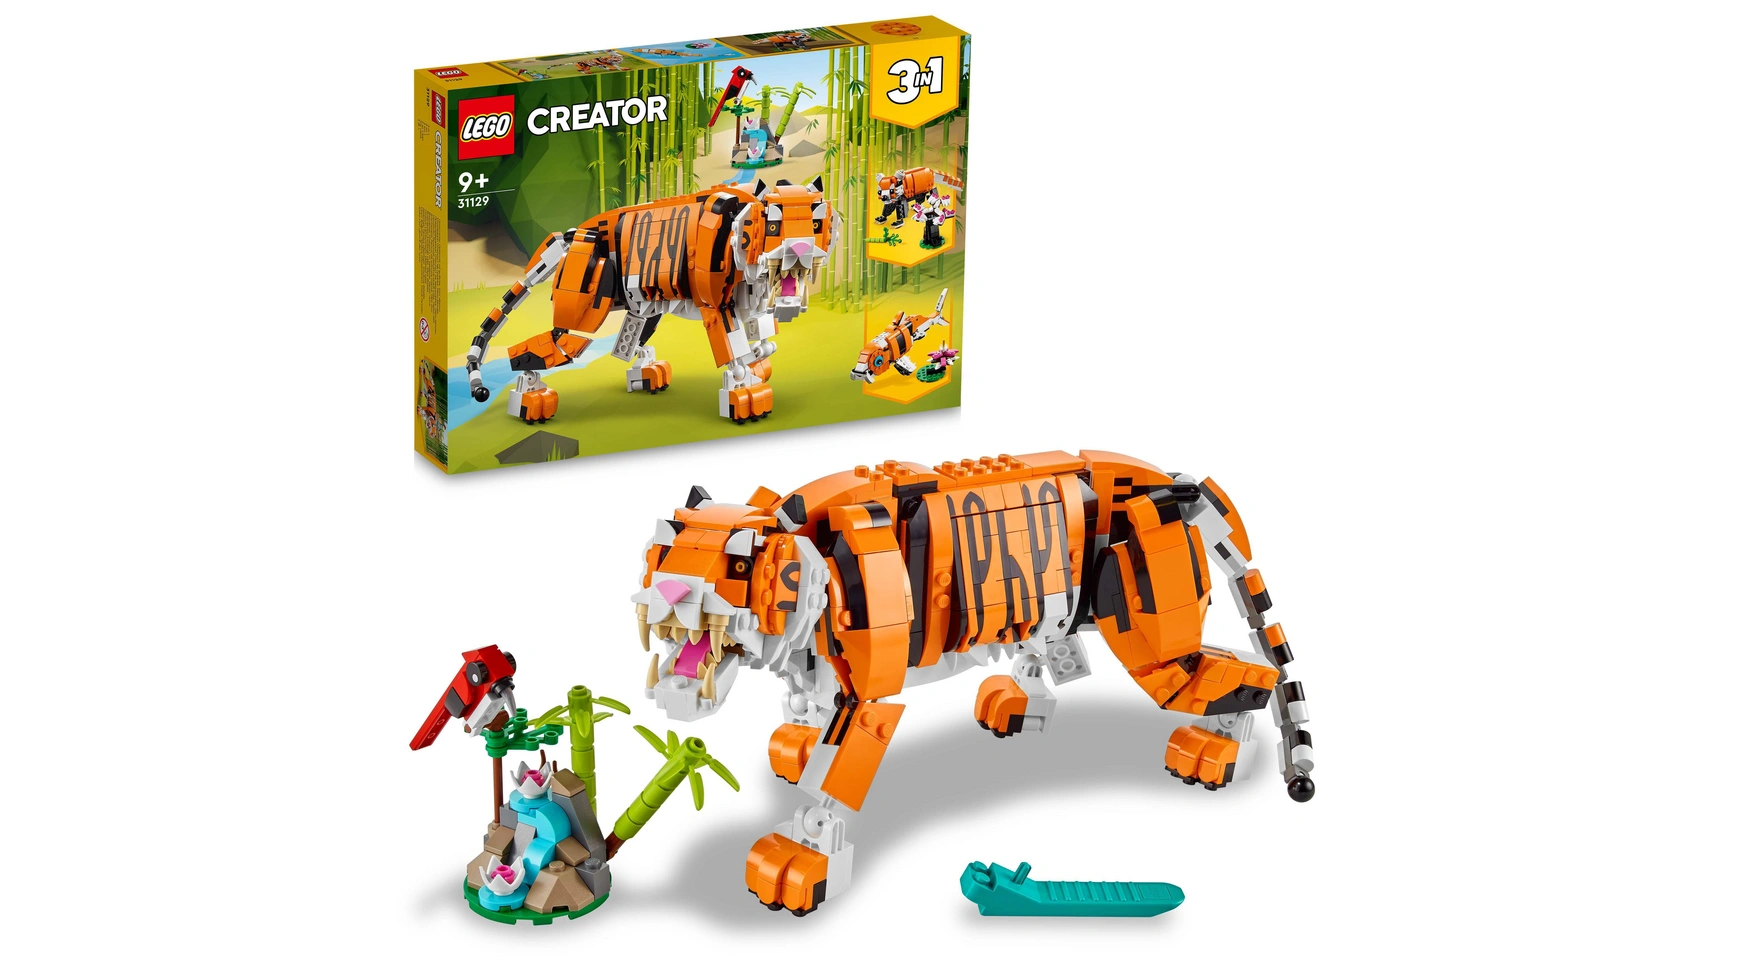 Lego Creator 3in1 Набор фигурок животного Величественный тигр для детей lego creator 3in1 набор фигурок животного величественный тигр для детей